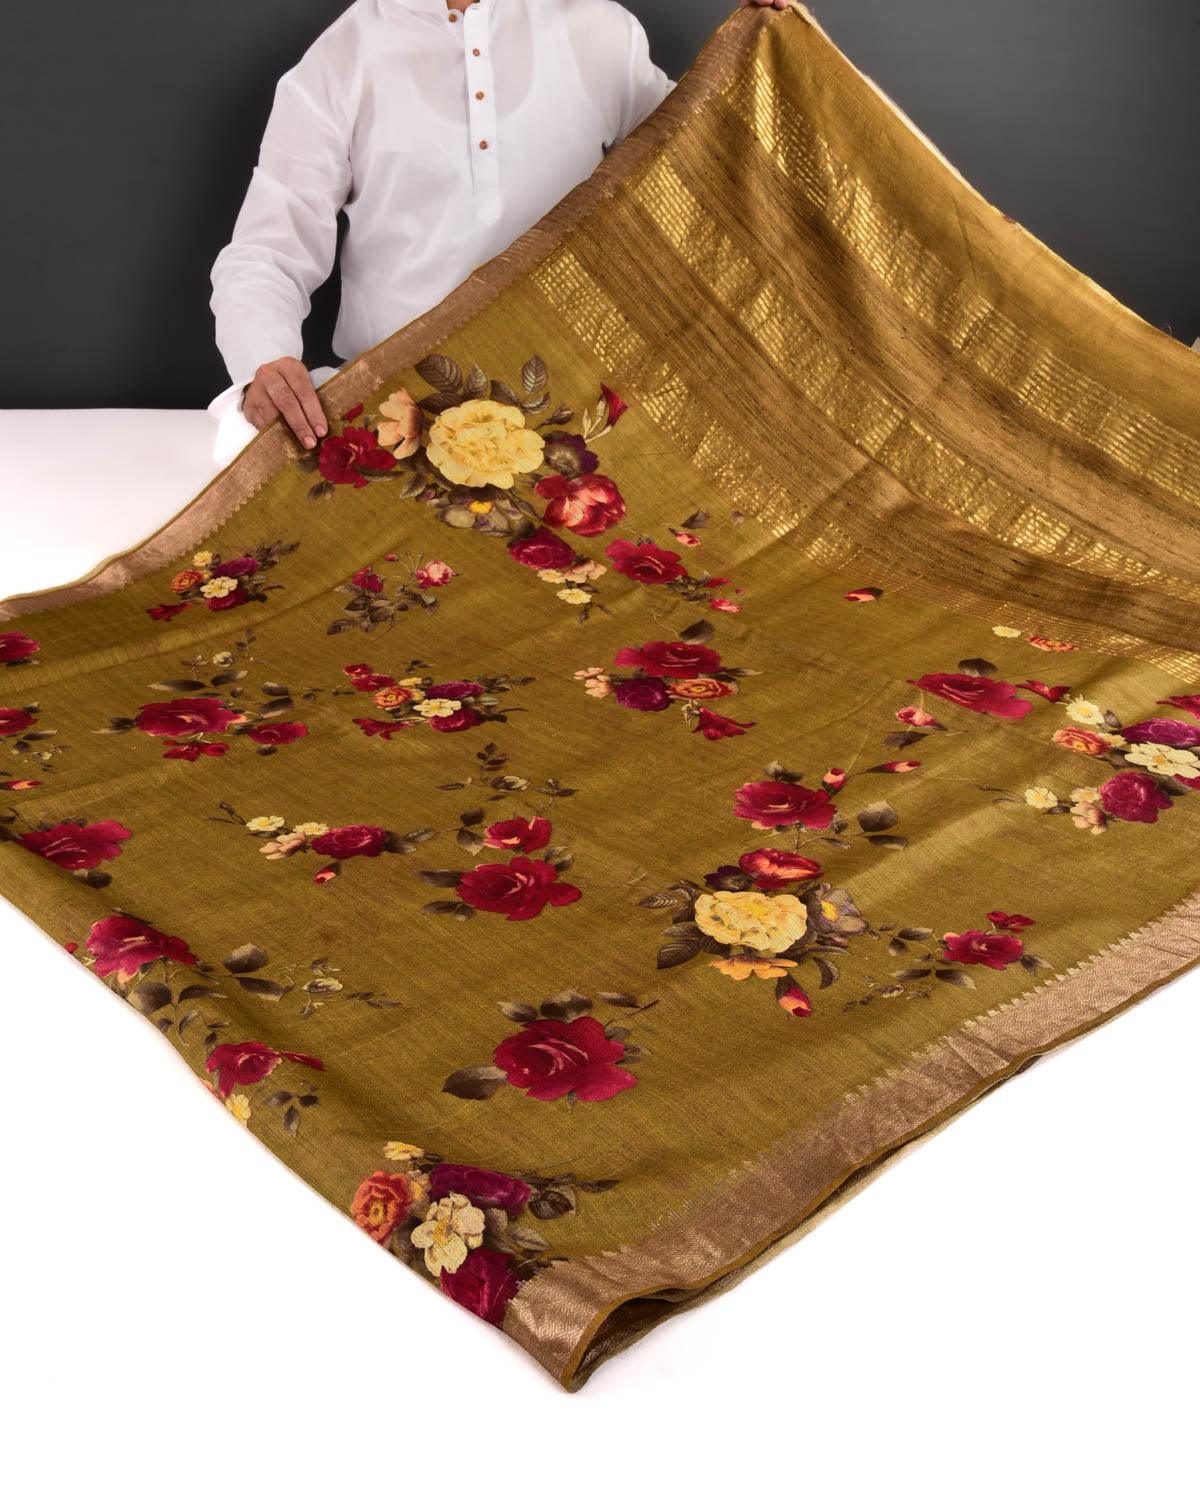 Mustard Yellow Floral Printed Muga Silk Saree with Zari Brocade Border - By HolyWeaves, Benares